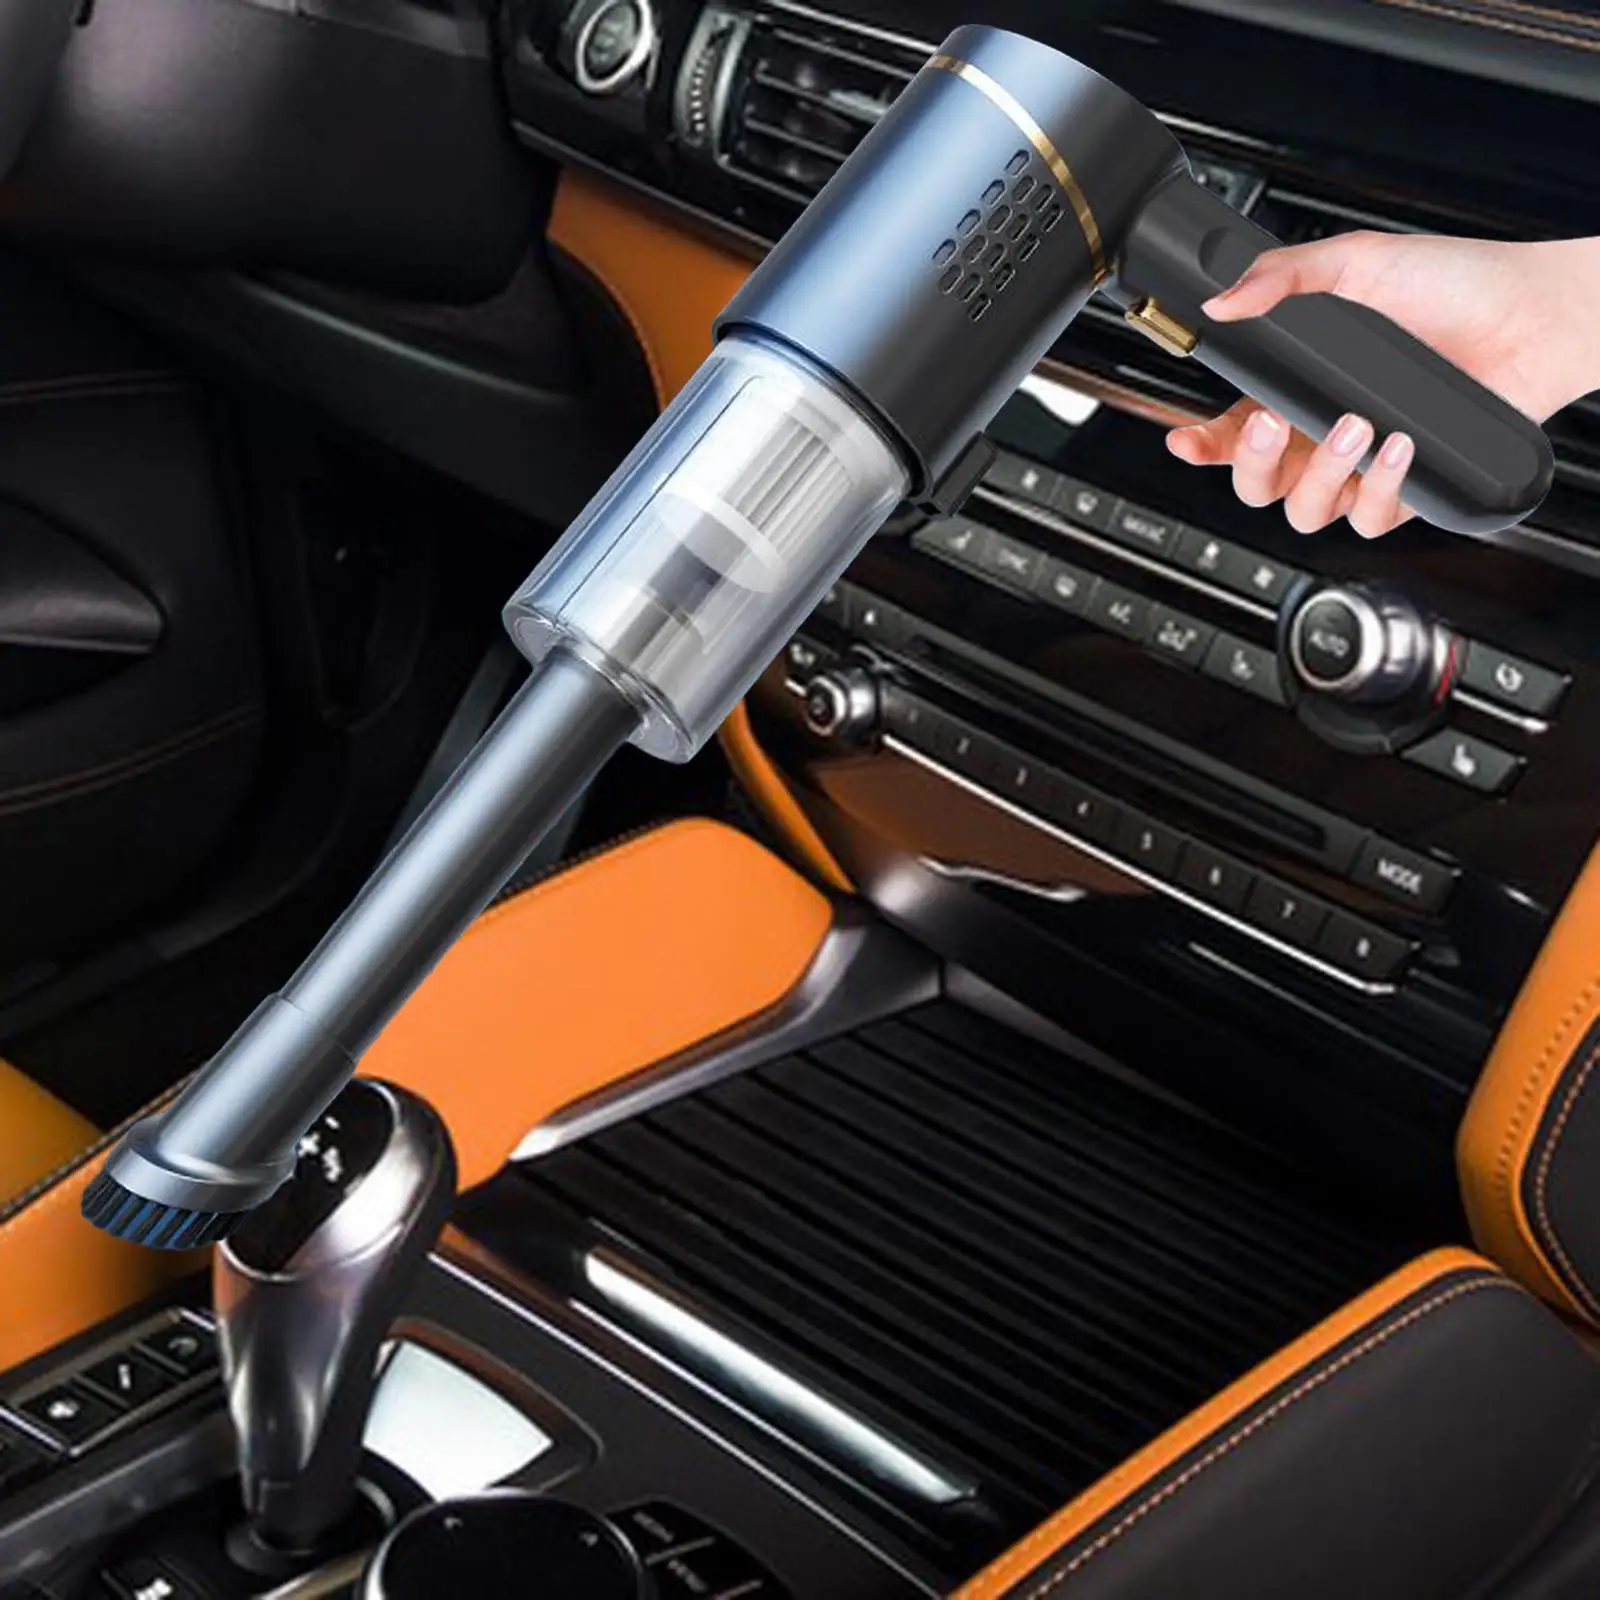 Mini Car Vacuum Cleaner Lightweight High Power Mini Vacuums Mini Duster Hand Vacuum Cleaner for Office Desk Car Home Pillows